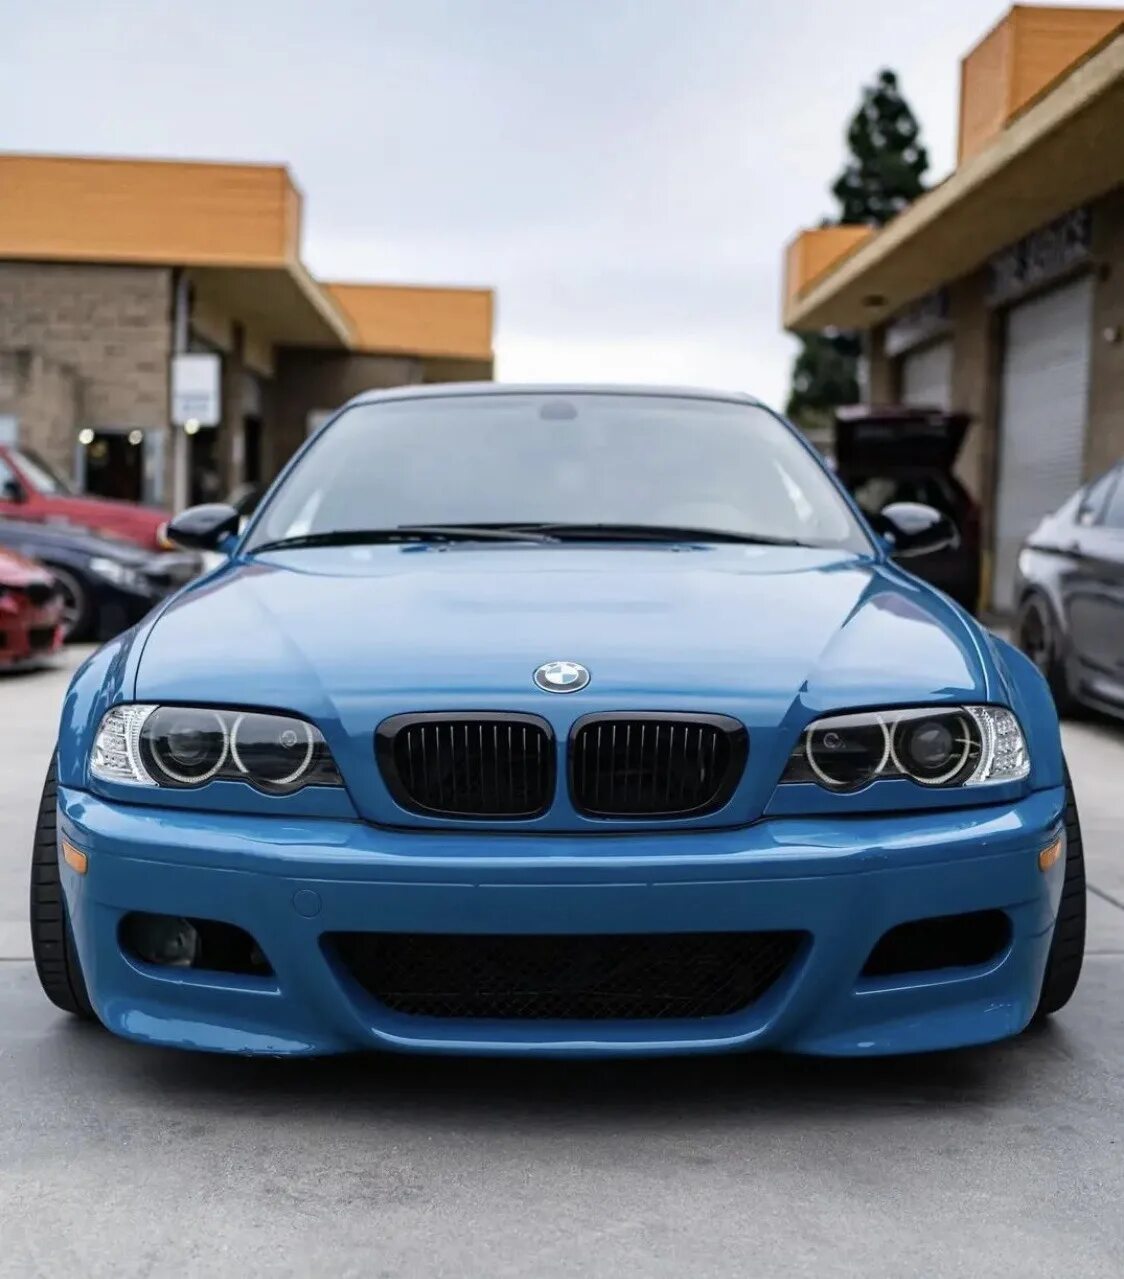 Е46 дорестайлинг. BMW m3 e46 Laguna Seca Blue. Е46 компакт. Е 46 кузов БМВ цвет Лагуна. BMW e46 Compact морда от купе.